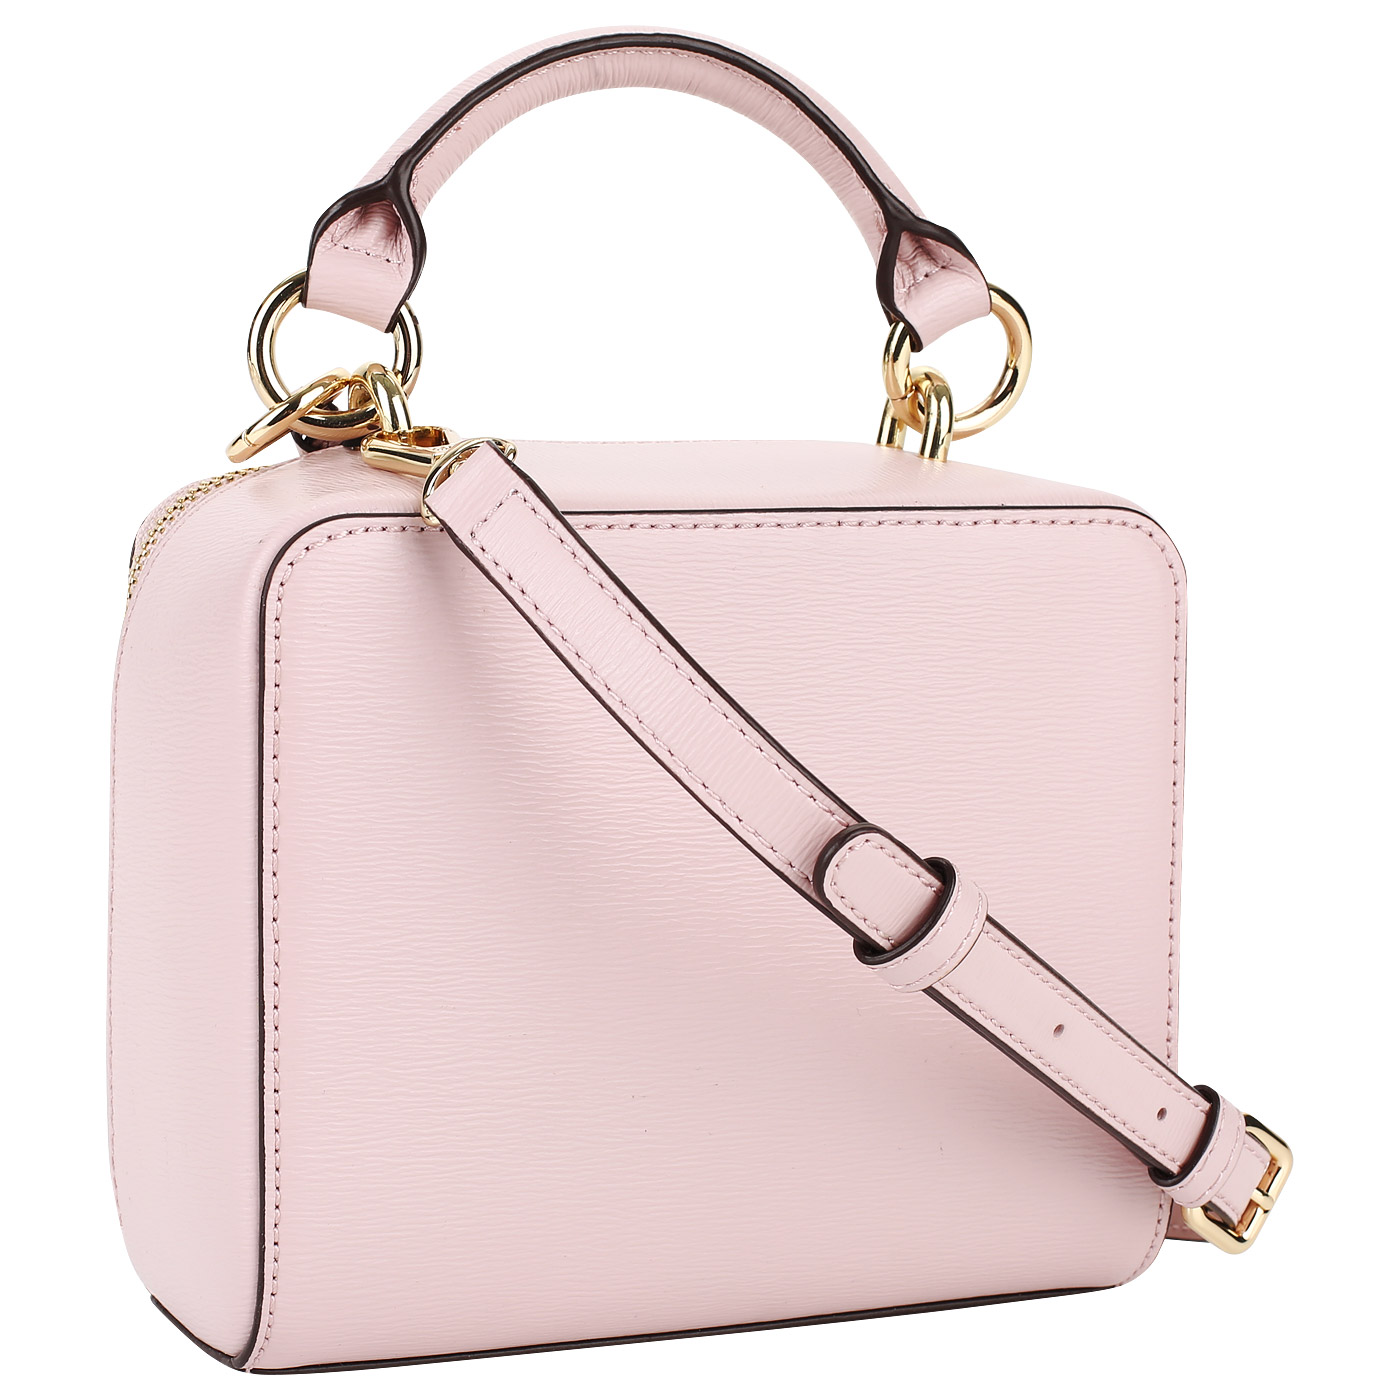 Розовая кожаная сумочка DKNY Sara